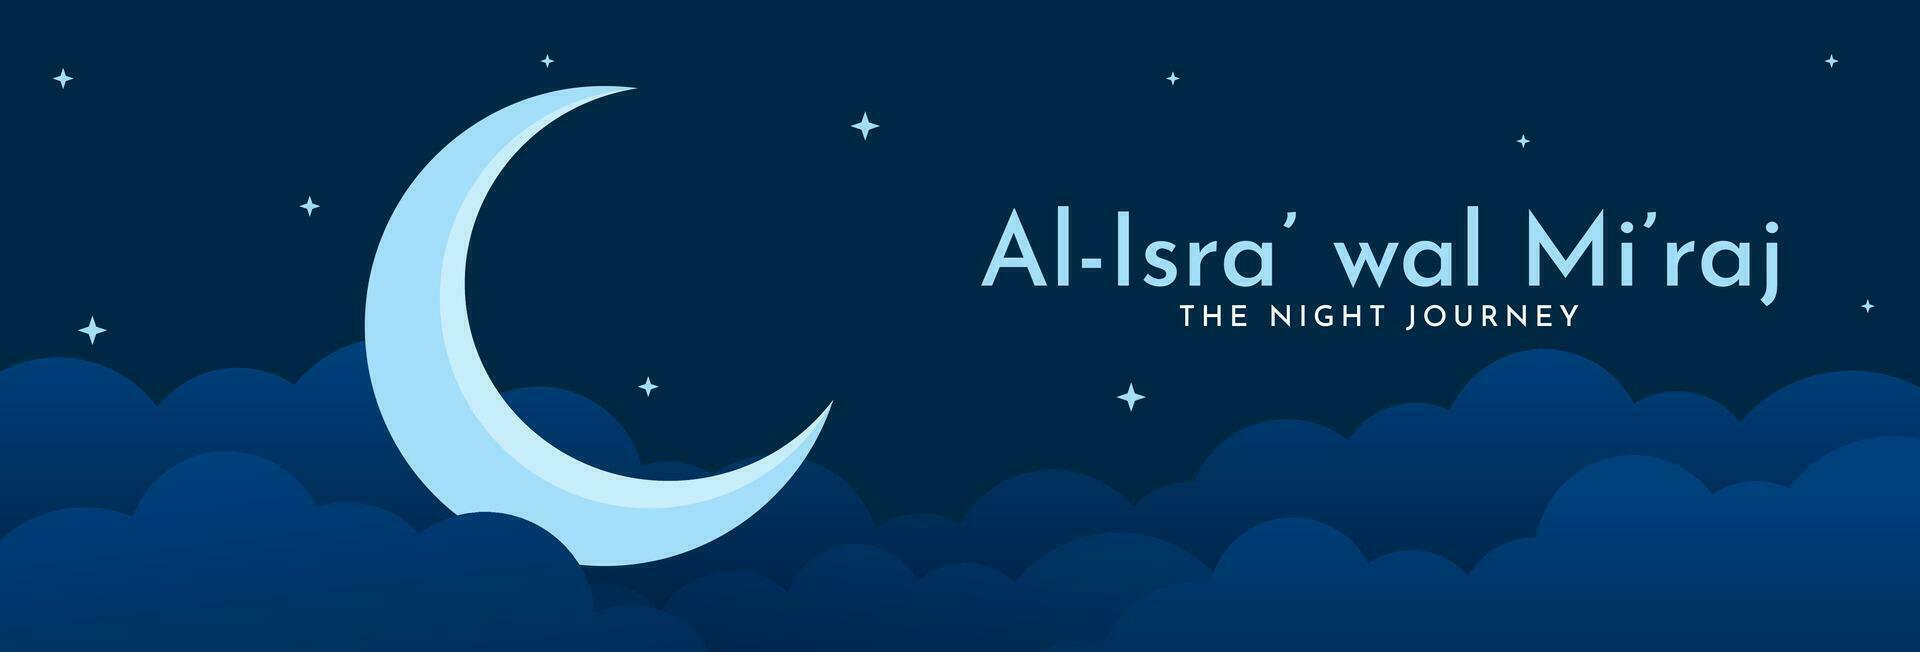 al-isra' wal mi'raj, de natt resa av de profet muhammad fick syn på. islamic bakgrund design mall. vektor illustration